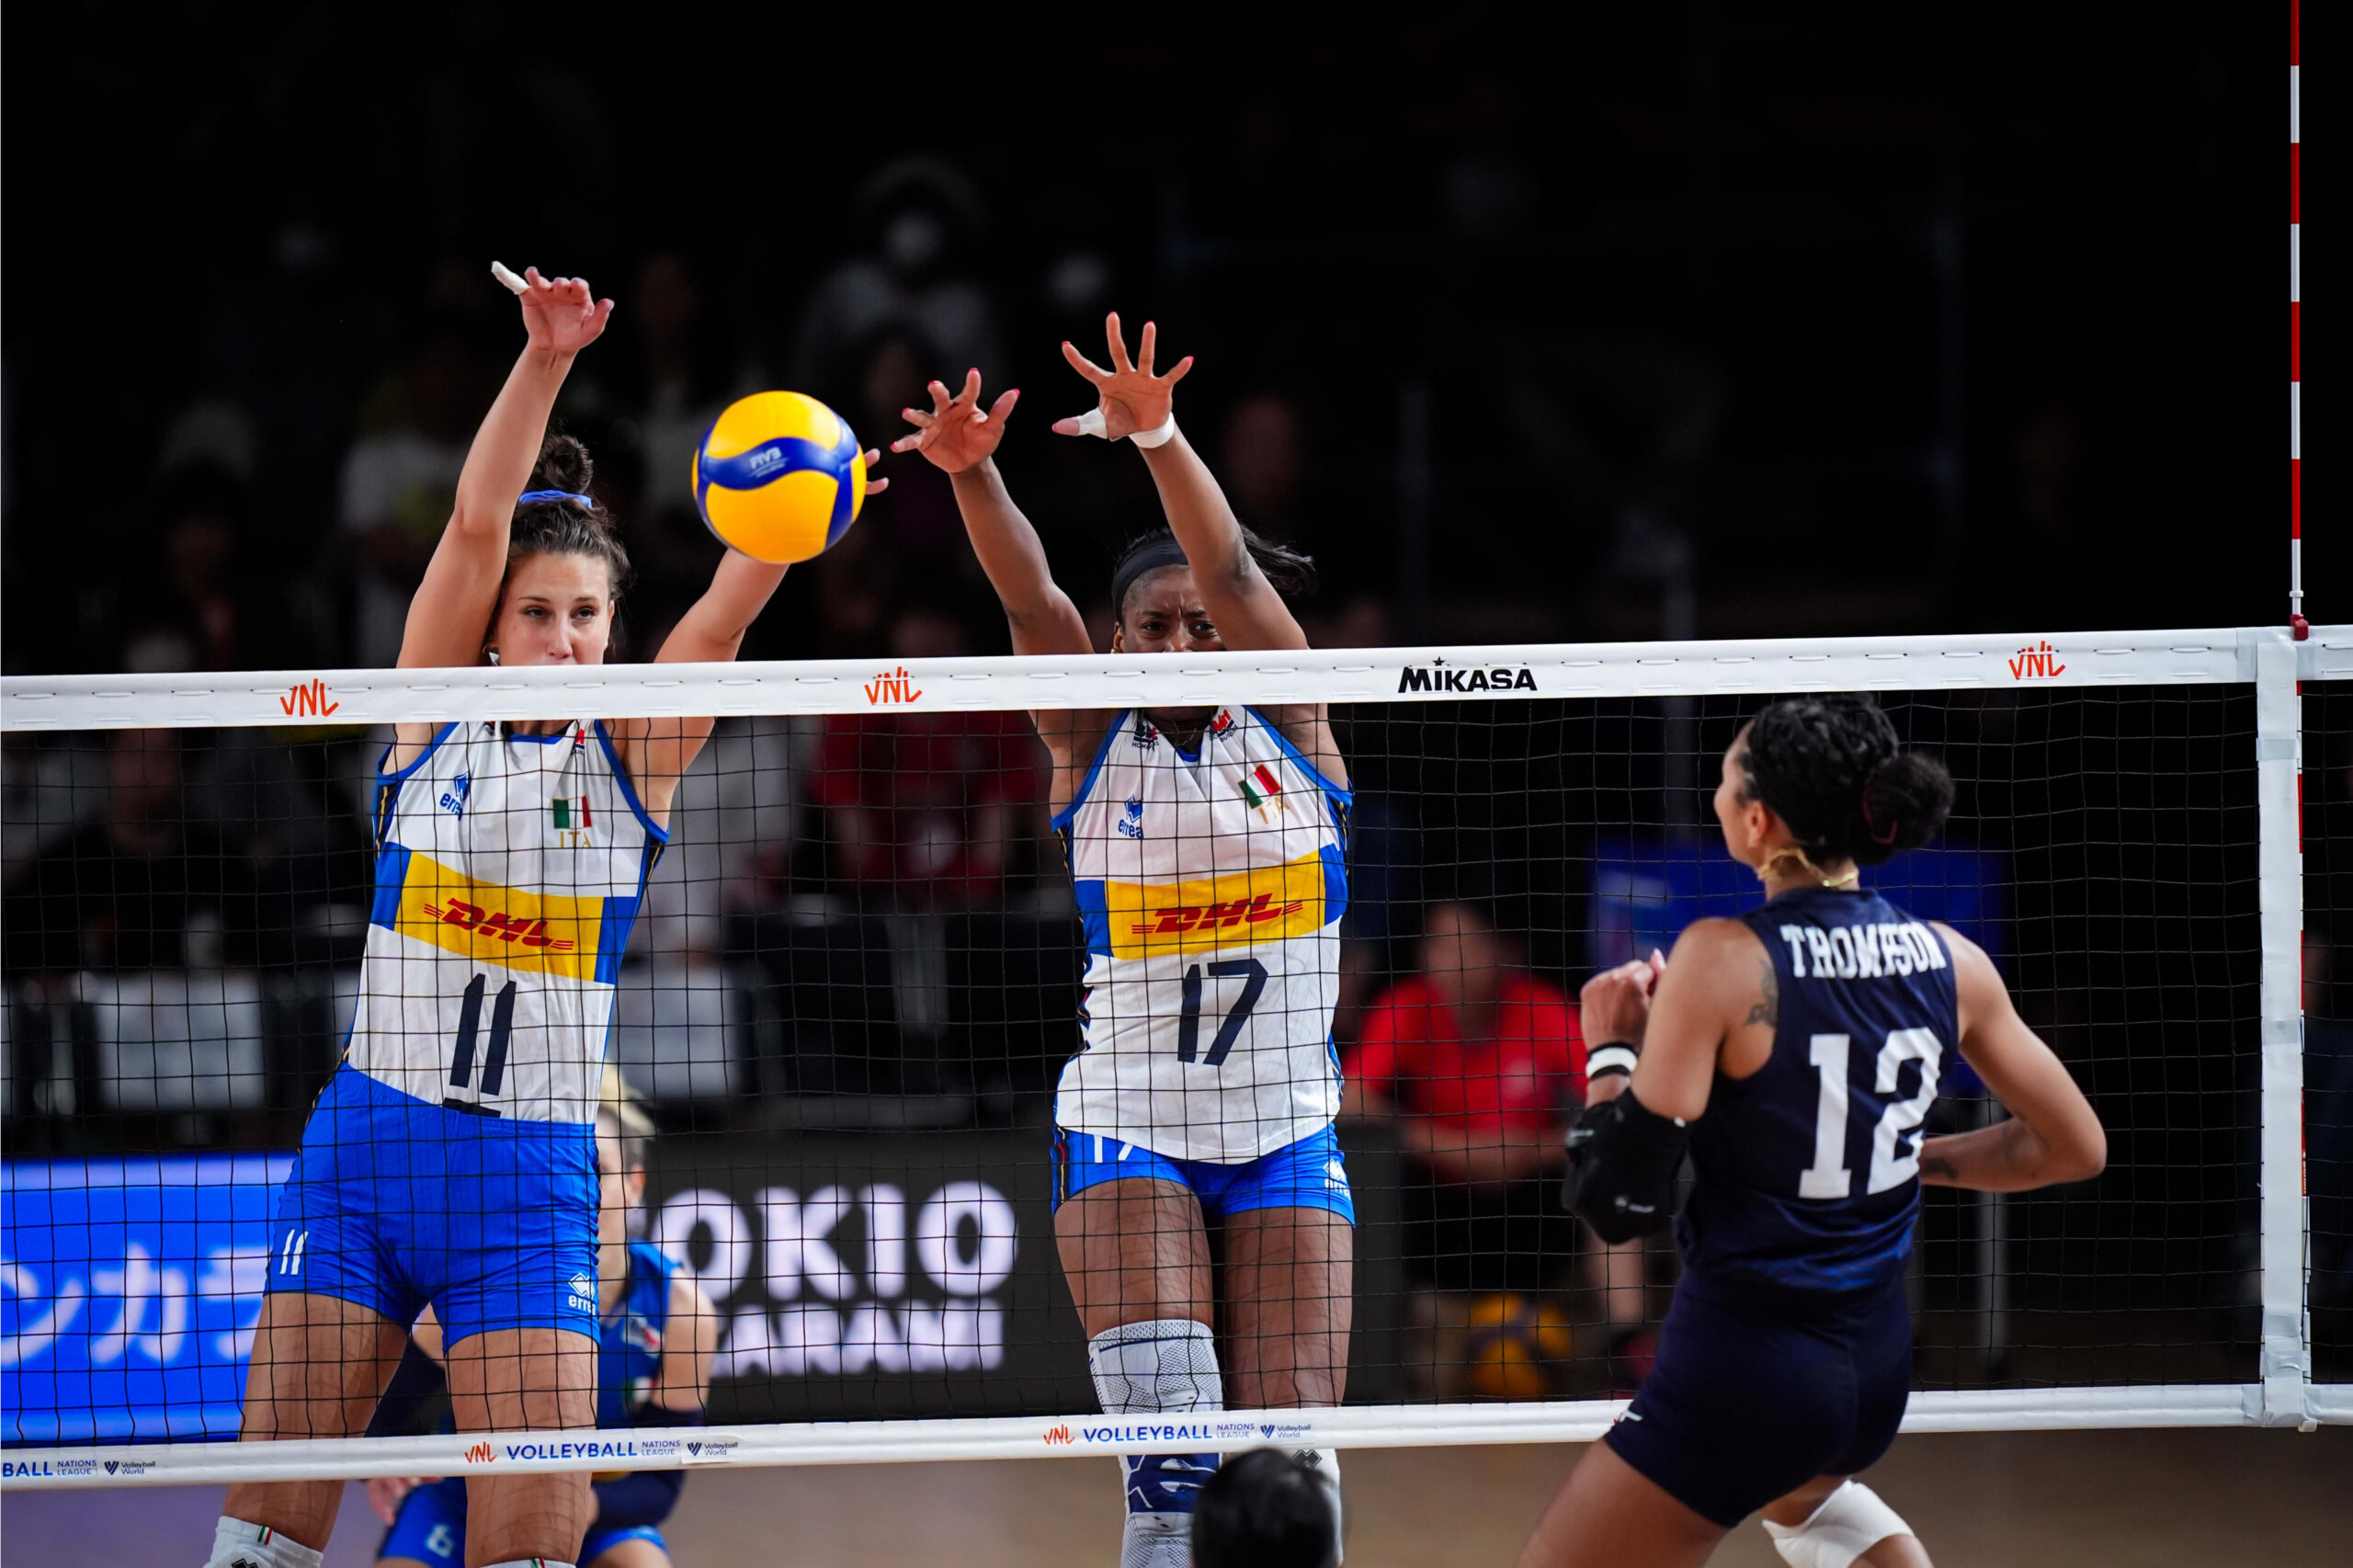 LIVE Italia Serbia 2 1, Nations League volley femminile in DIRETTA: le azzurre fermano la rimonta serba e vincono il terzo set, 25 23